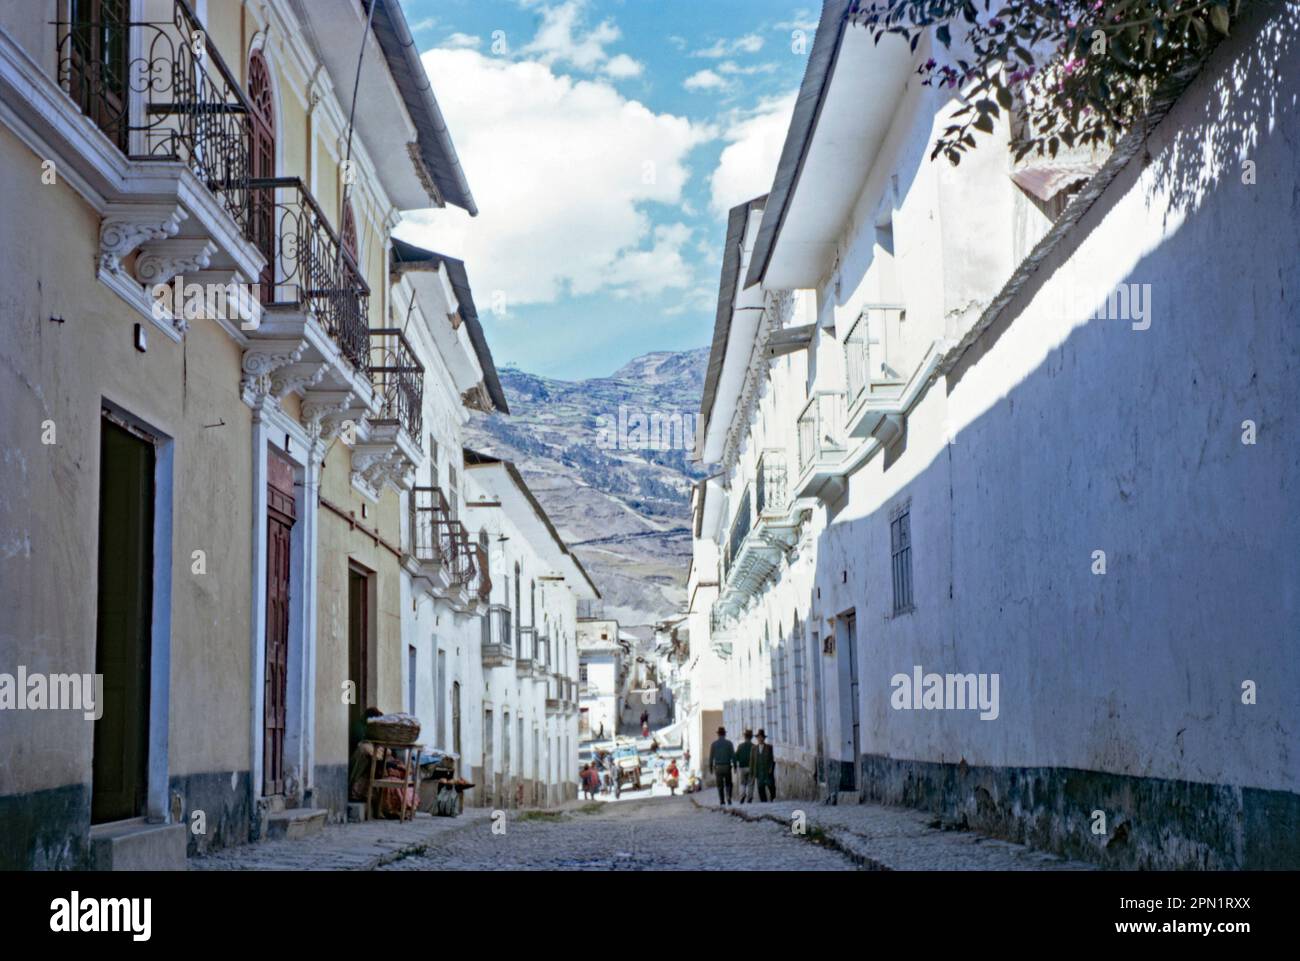 Un petit coin de rue endormi dans la ville de Sorata, en Bolivie, en 1968. L'architecture locale reflète l'influence coloniale espagnole. Les montagnes des Andes s'élèvent en arrière-plan. Sorata est une petite ville dans le département de la Paz dans les Andes boliviennes, au nord-ouest de la ville de la Paz et à l'est du lac Titicaca. Il est devenu un lieu d'escapade de week-end populaire et un point d'arrêt pour les randonneurs - une photographie vintage 1960s. Banque D'Images